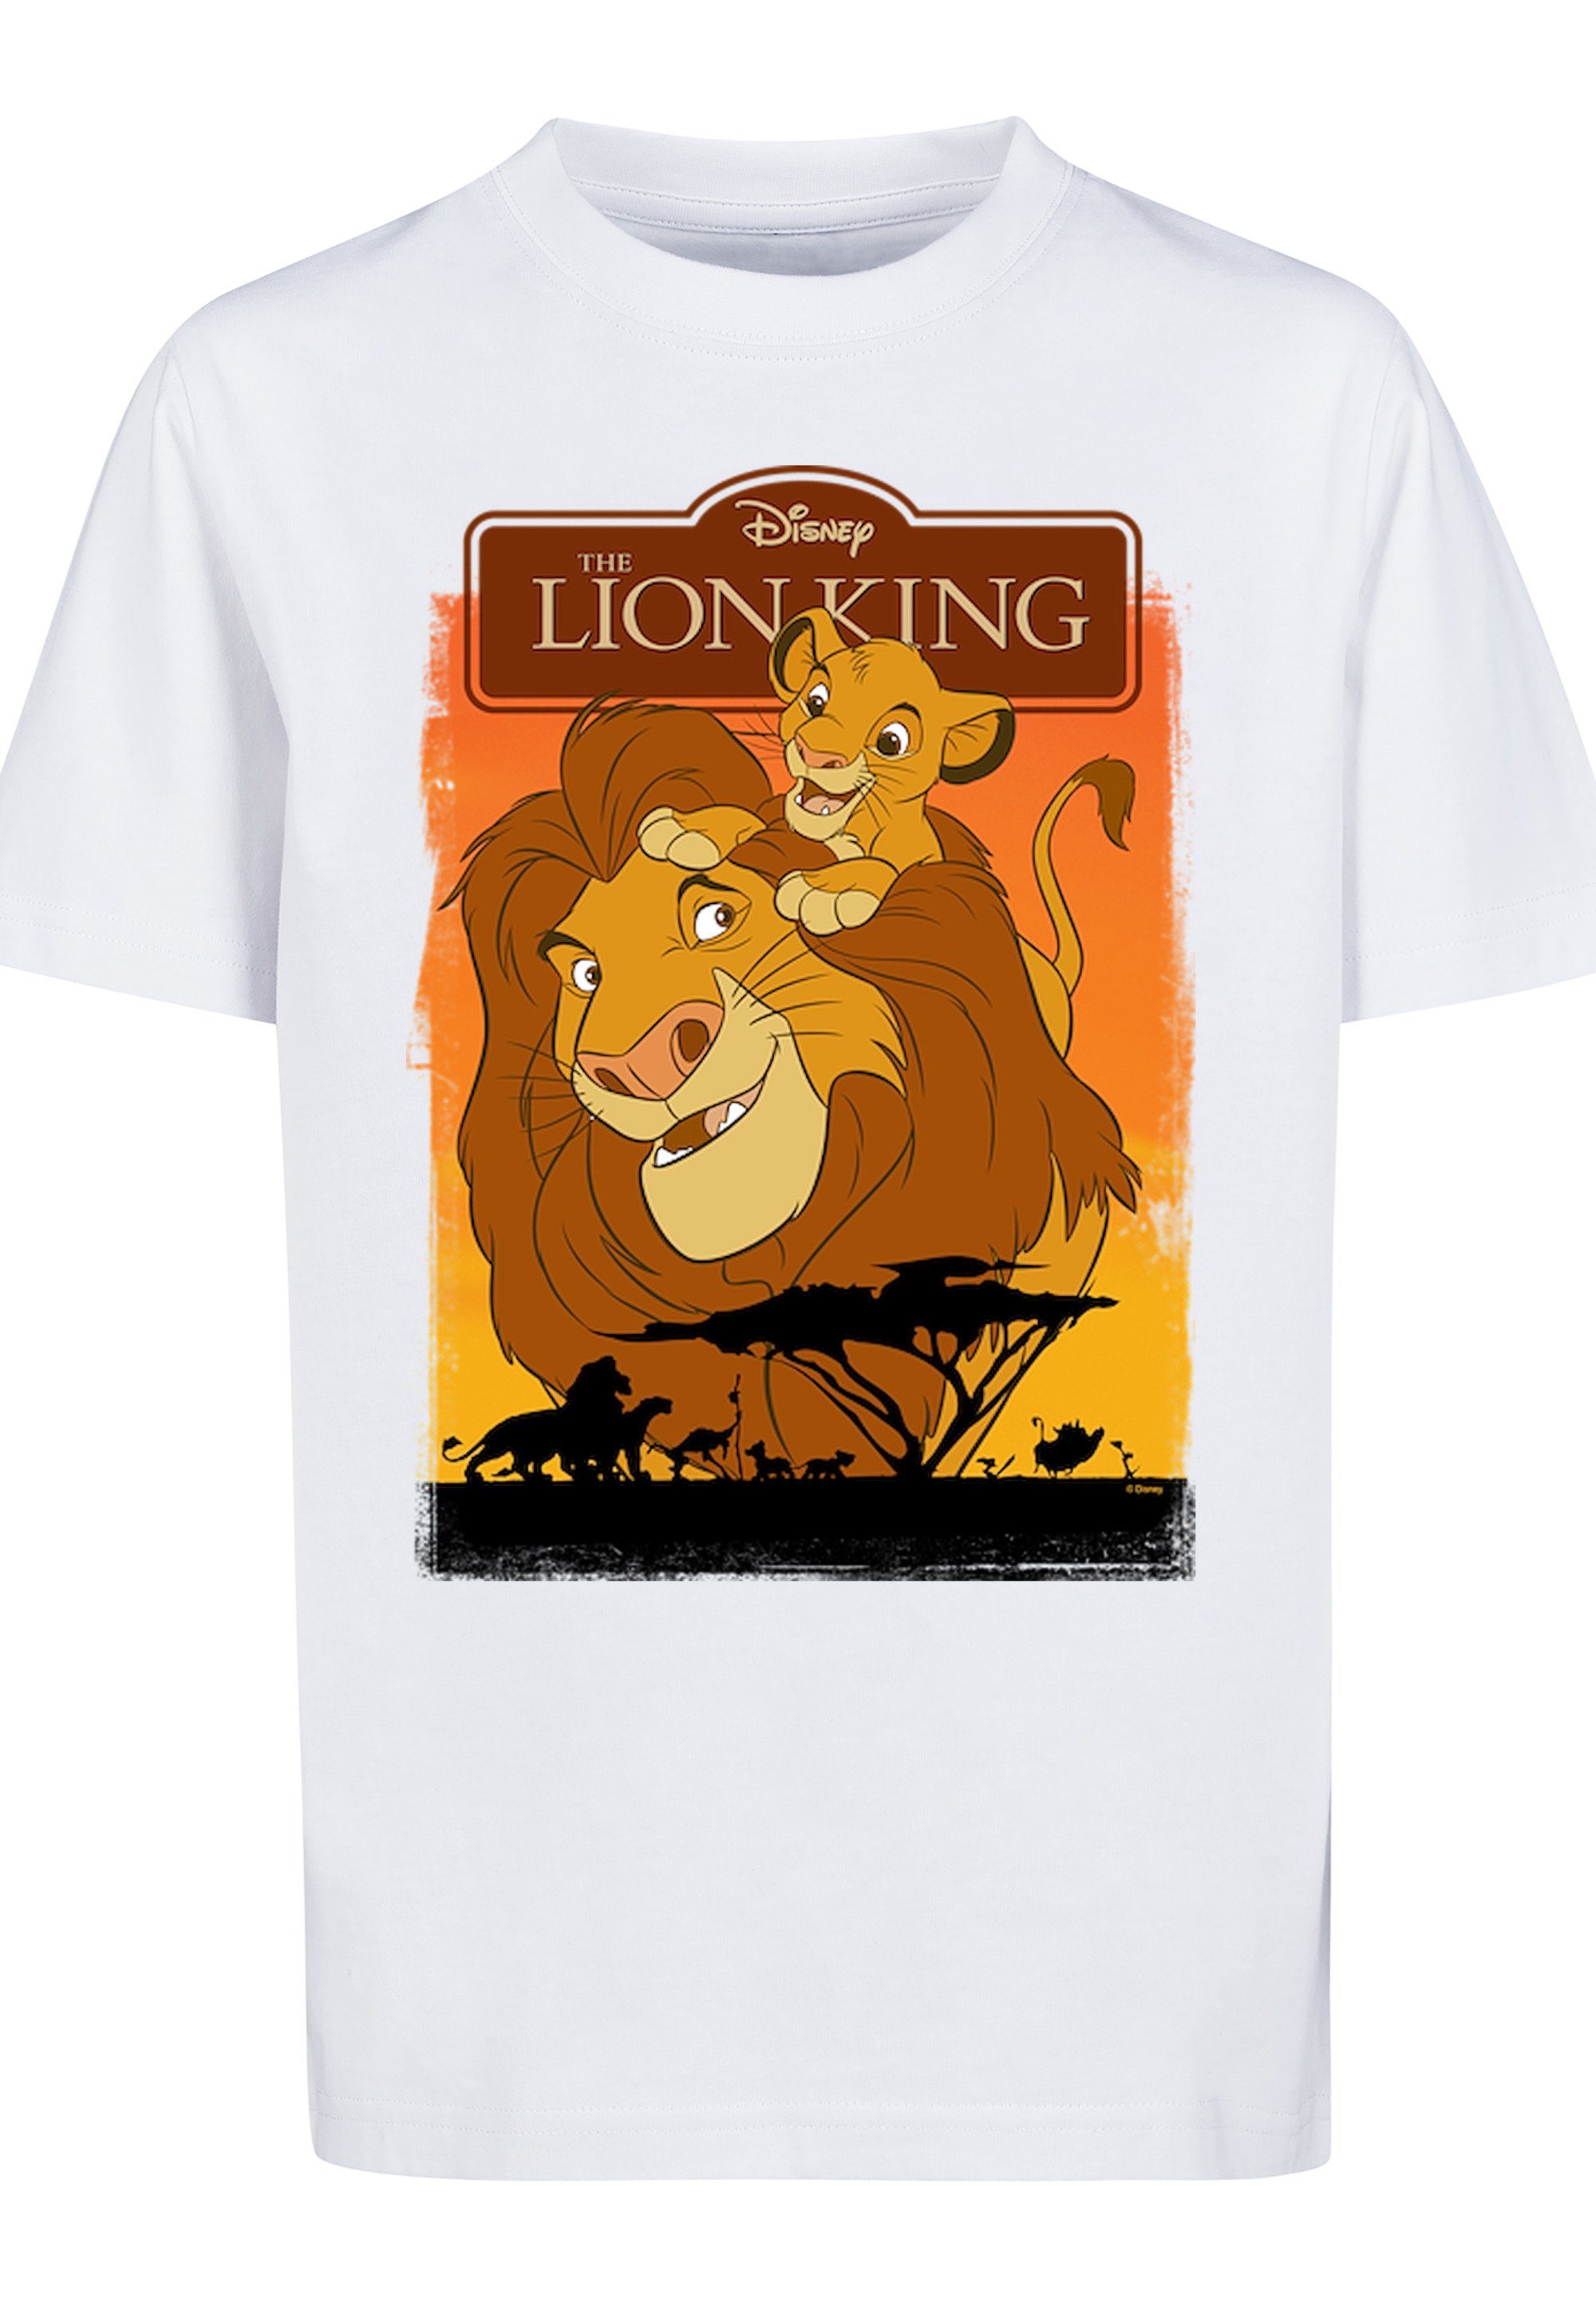 F4NT4STIC T-Shirt König der Löwen Simba und Mufasa Print, Bequemer Schnitt  zum rundum wohlfühlen | T-Shirts